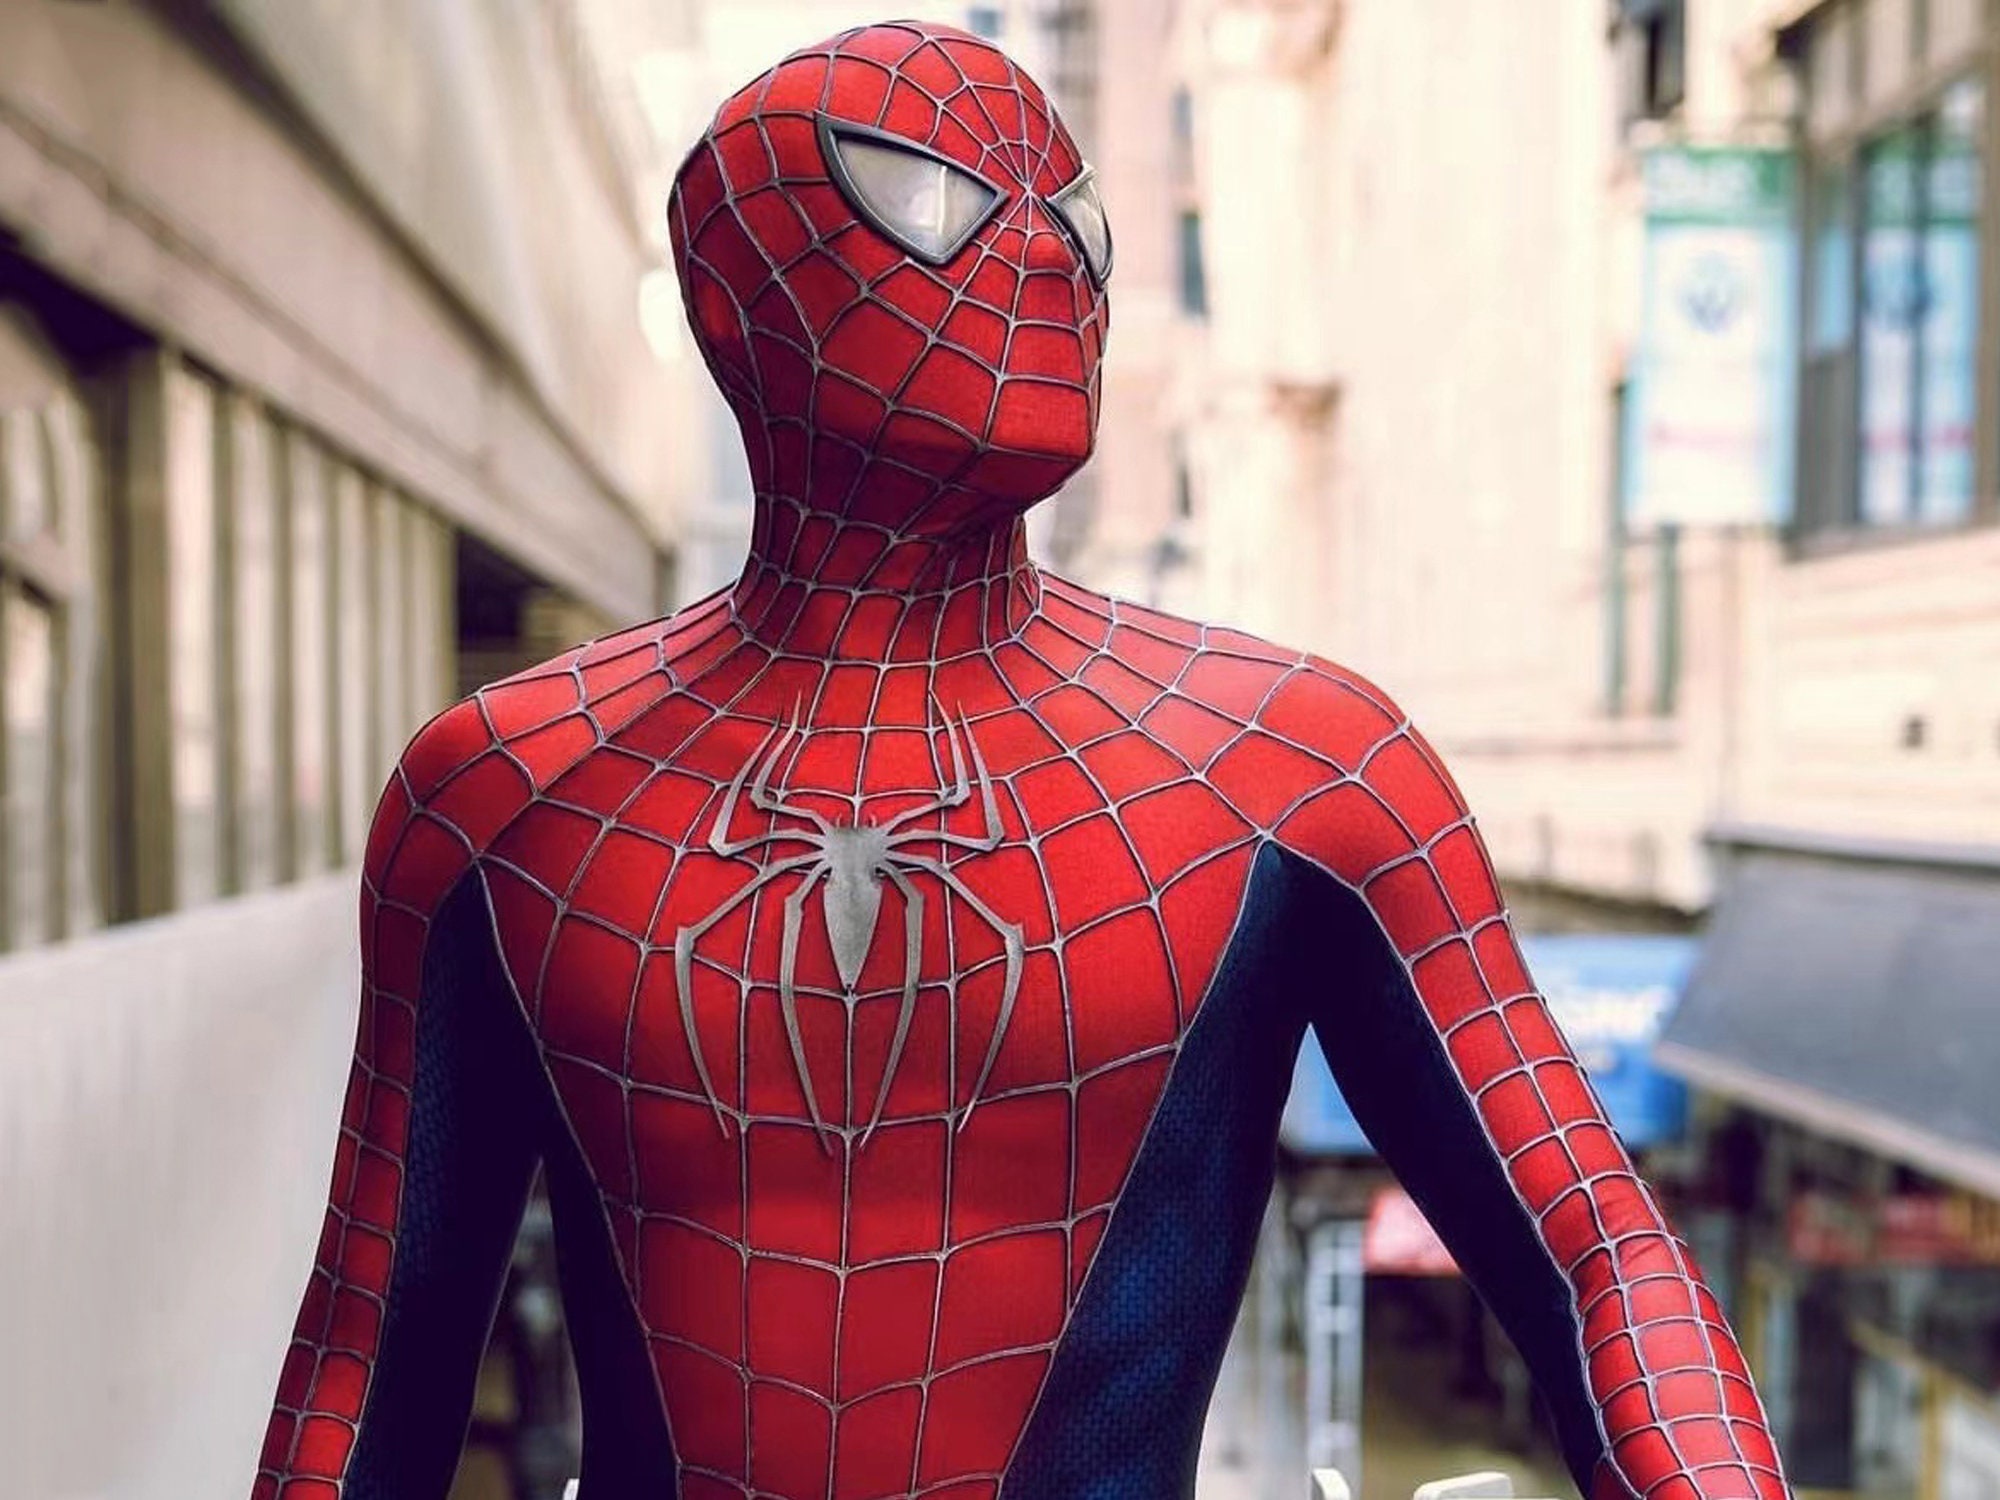 Raimi Spiderman Costume 3D Print Spandex Superhero Cosplay Adult & Kid Suit  HOT